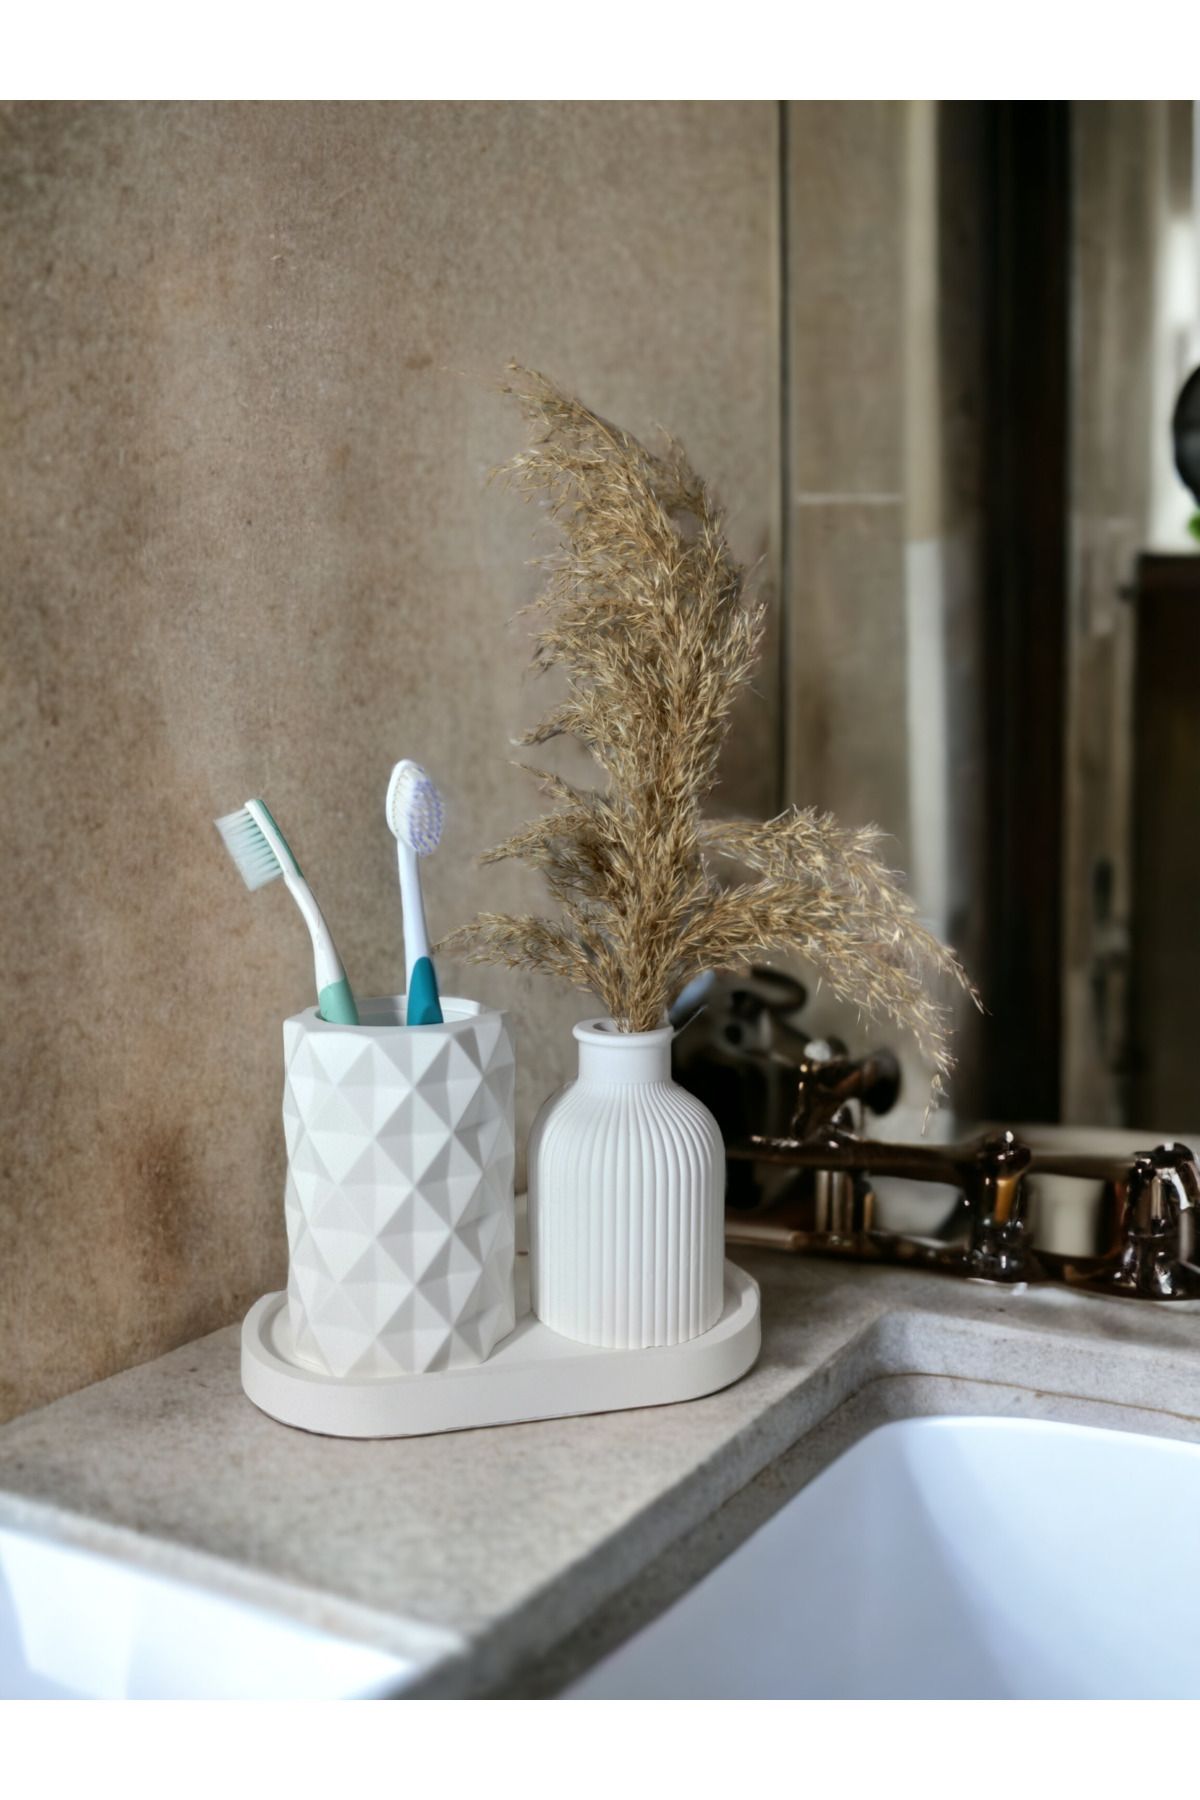 ROLLOR Diş fırçalığı, Vazo, Tabak seti, Banyo seti Dekoratif ürün